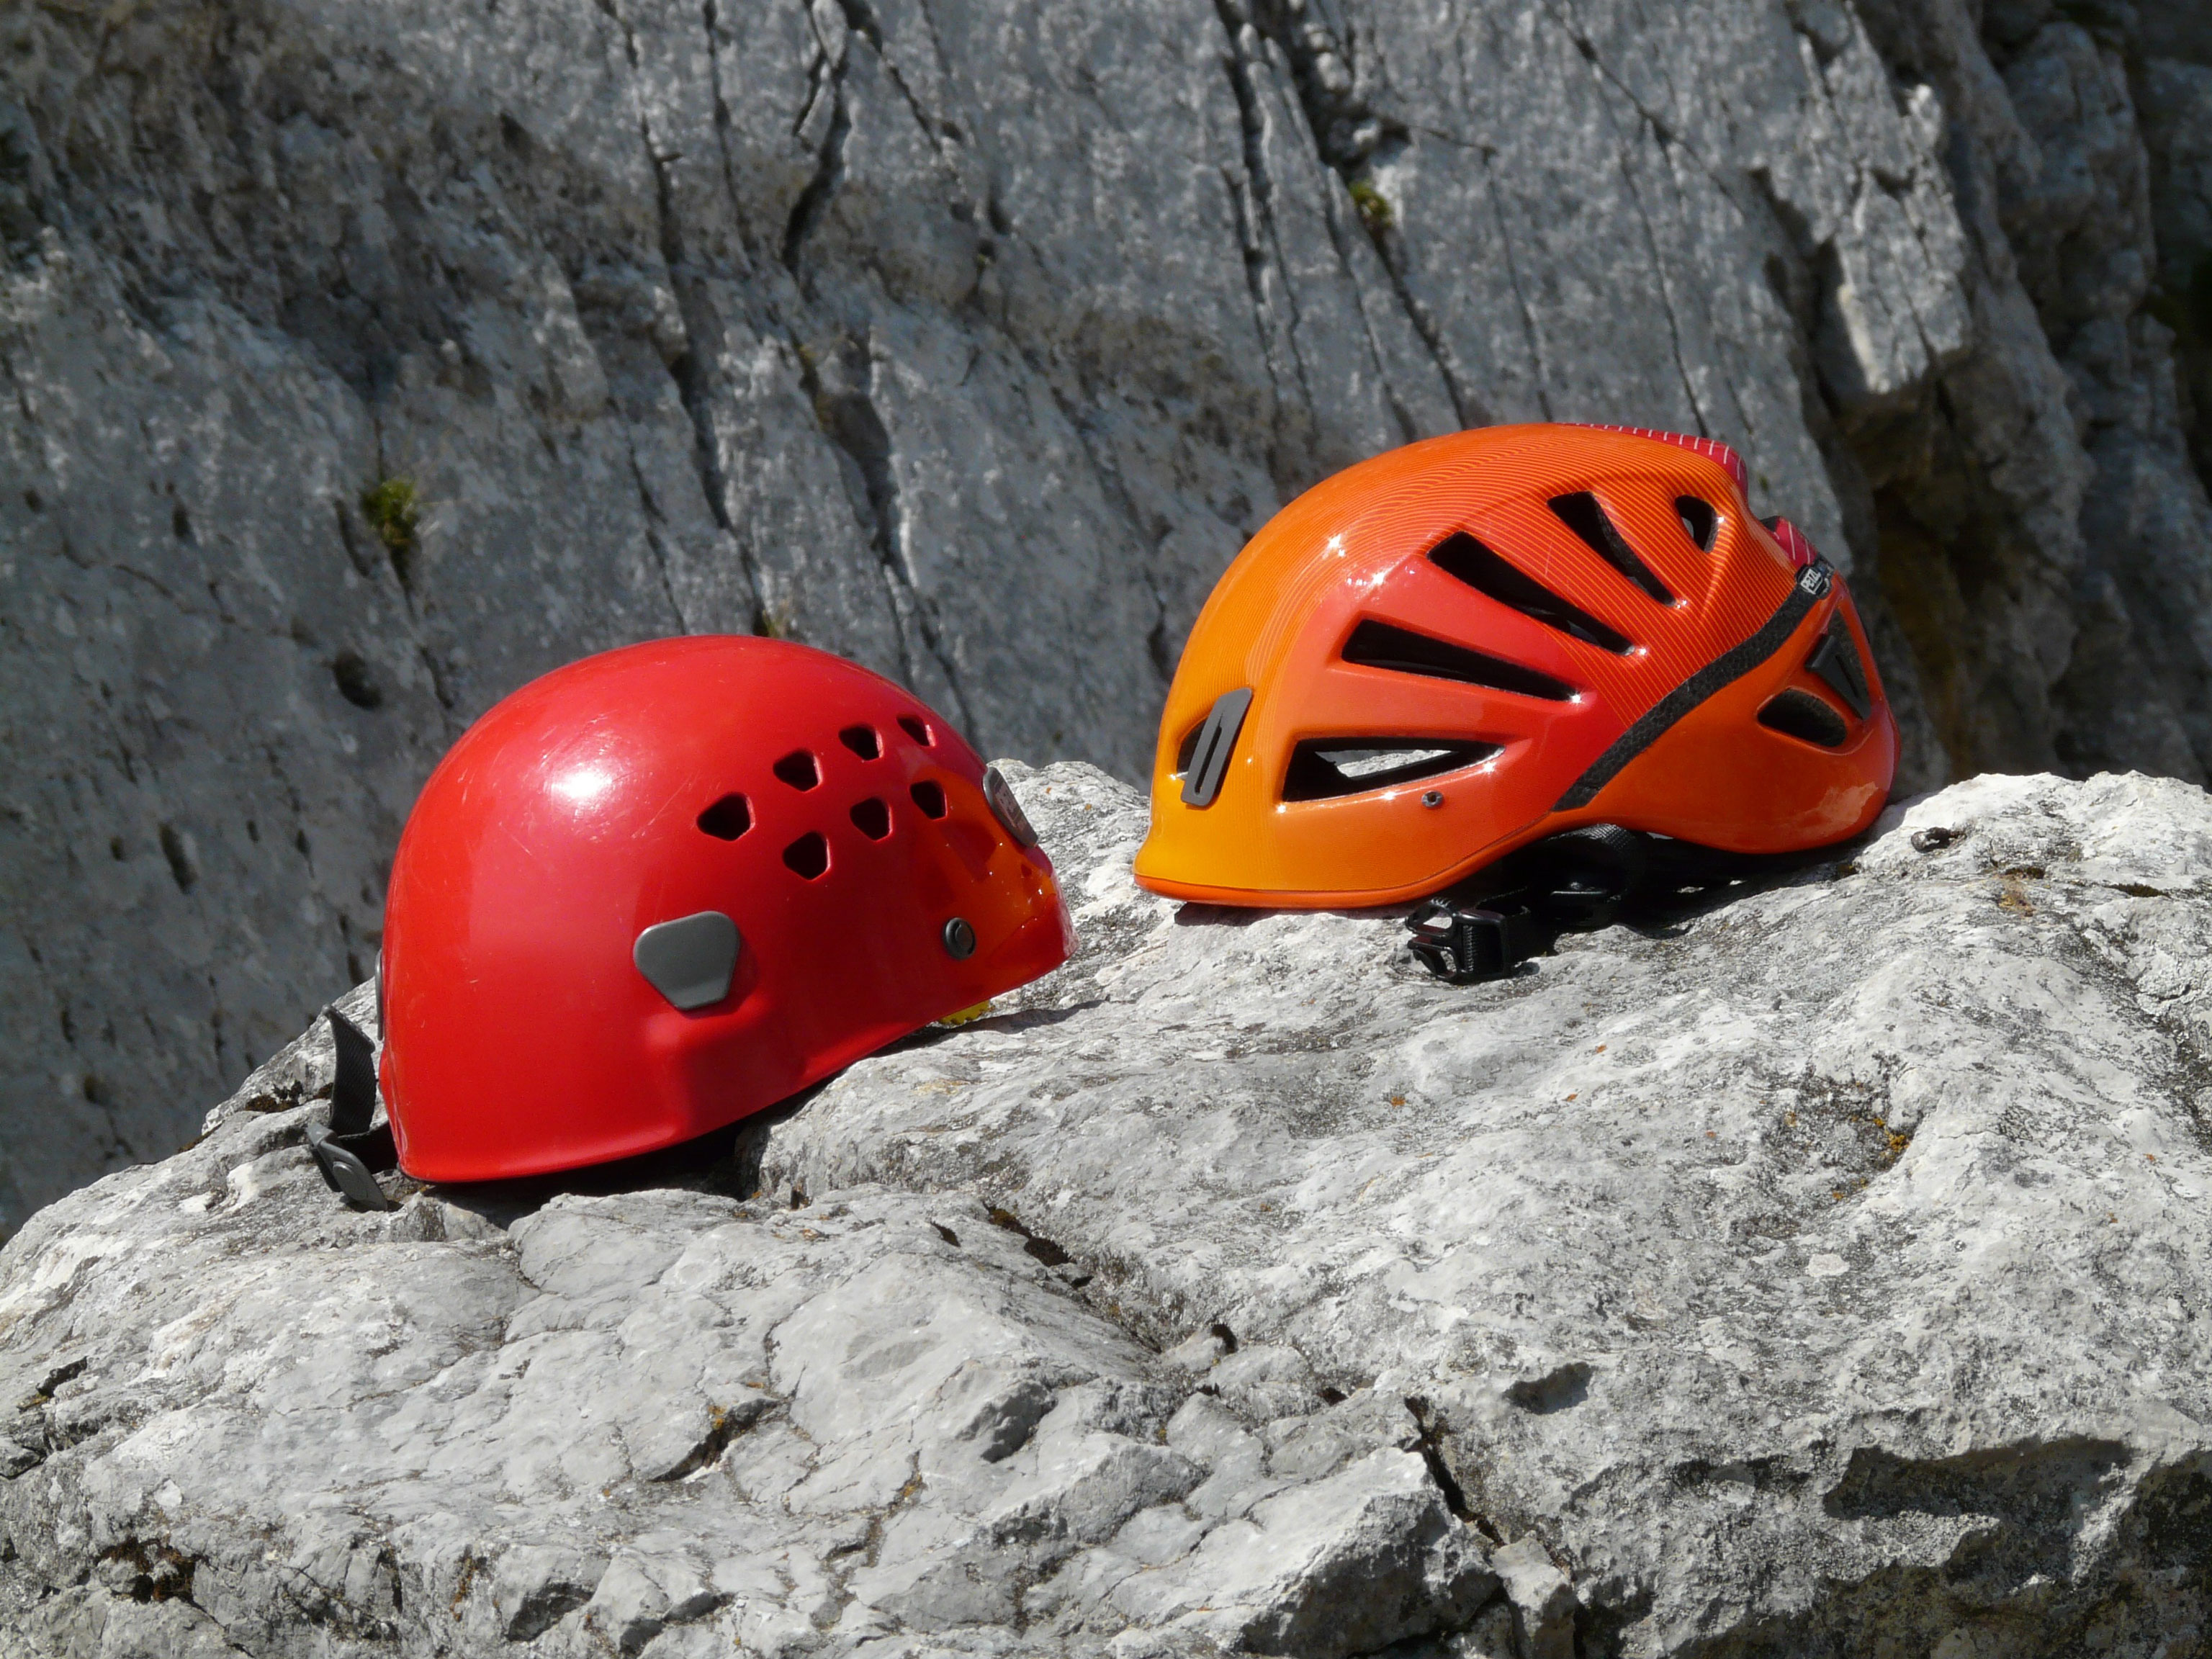 Modern climbing helmets